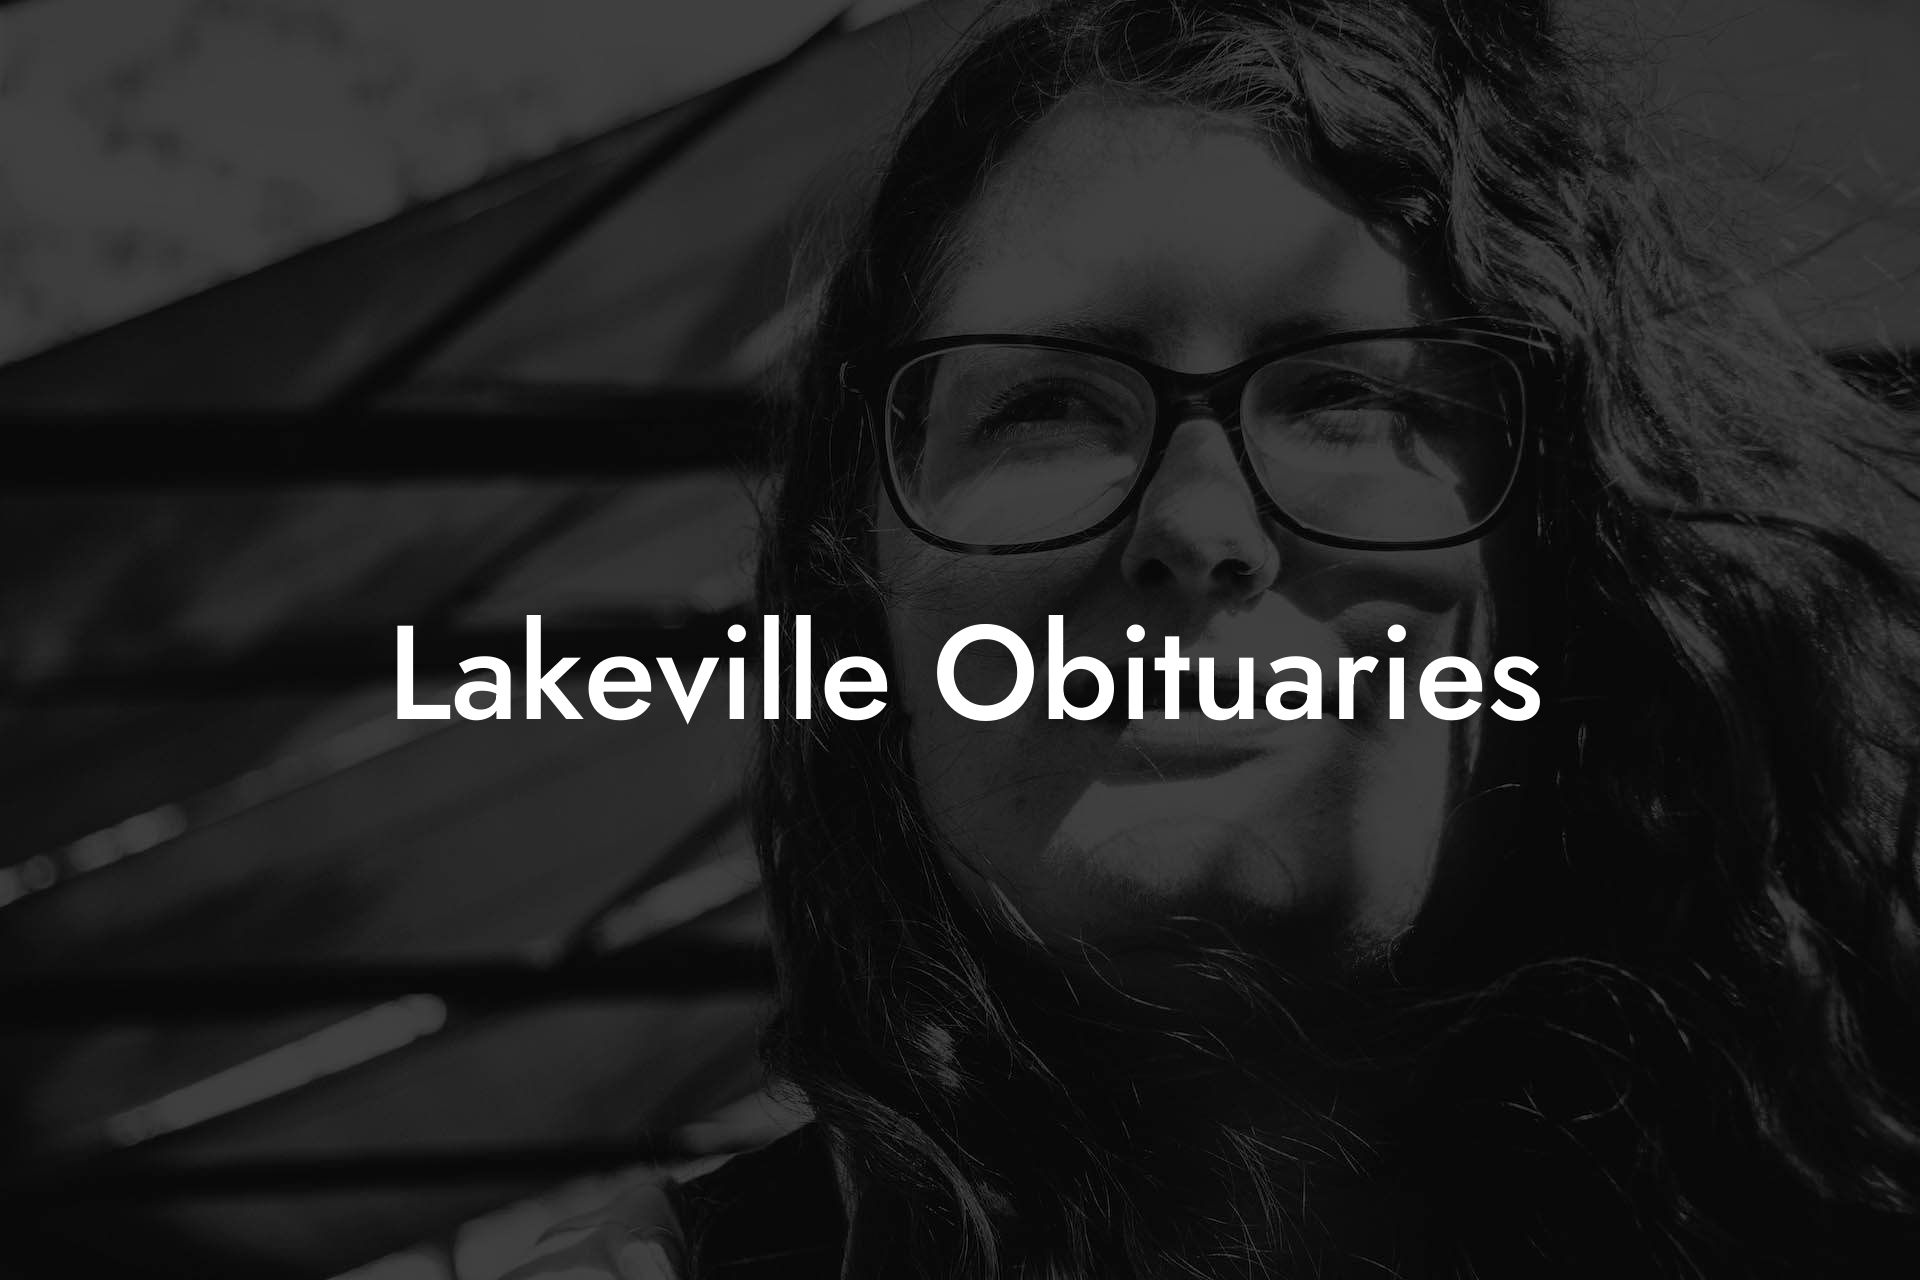 Lakeville Obituaries